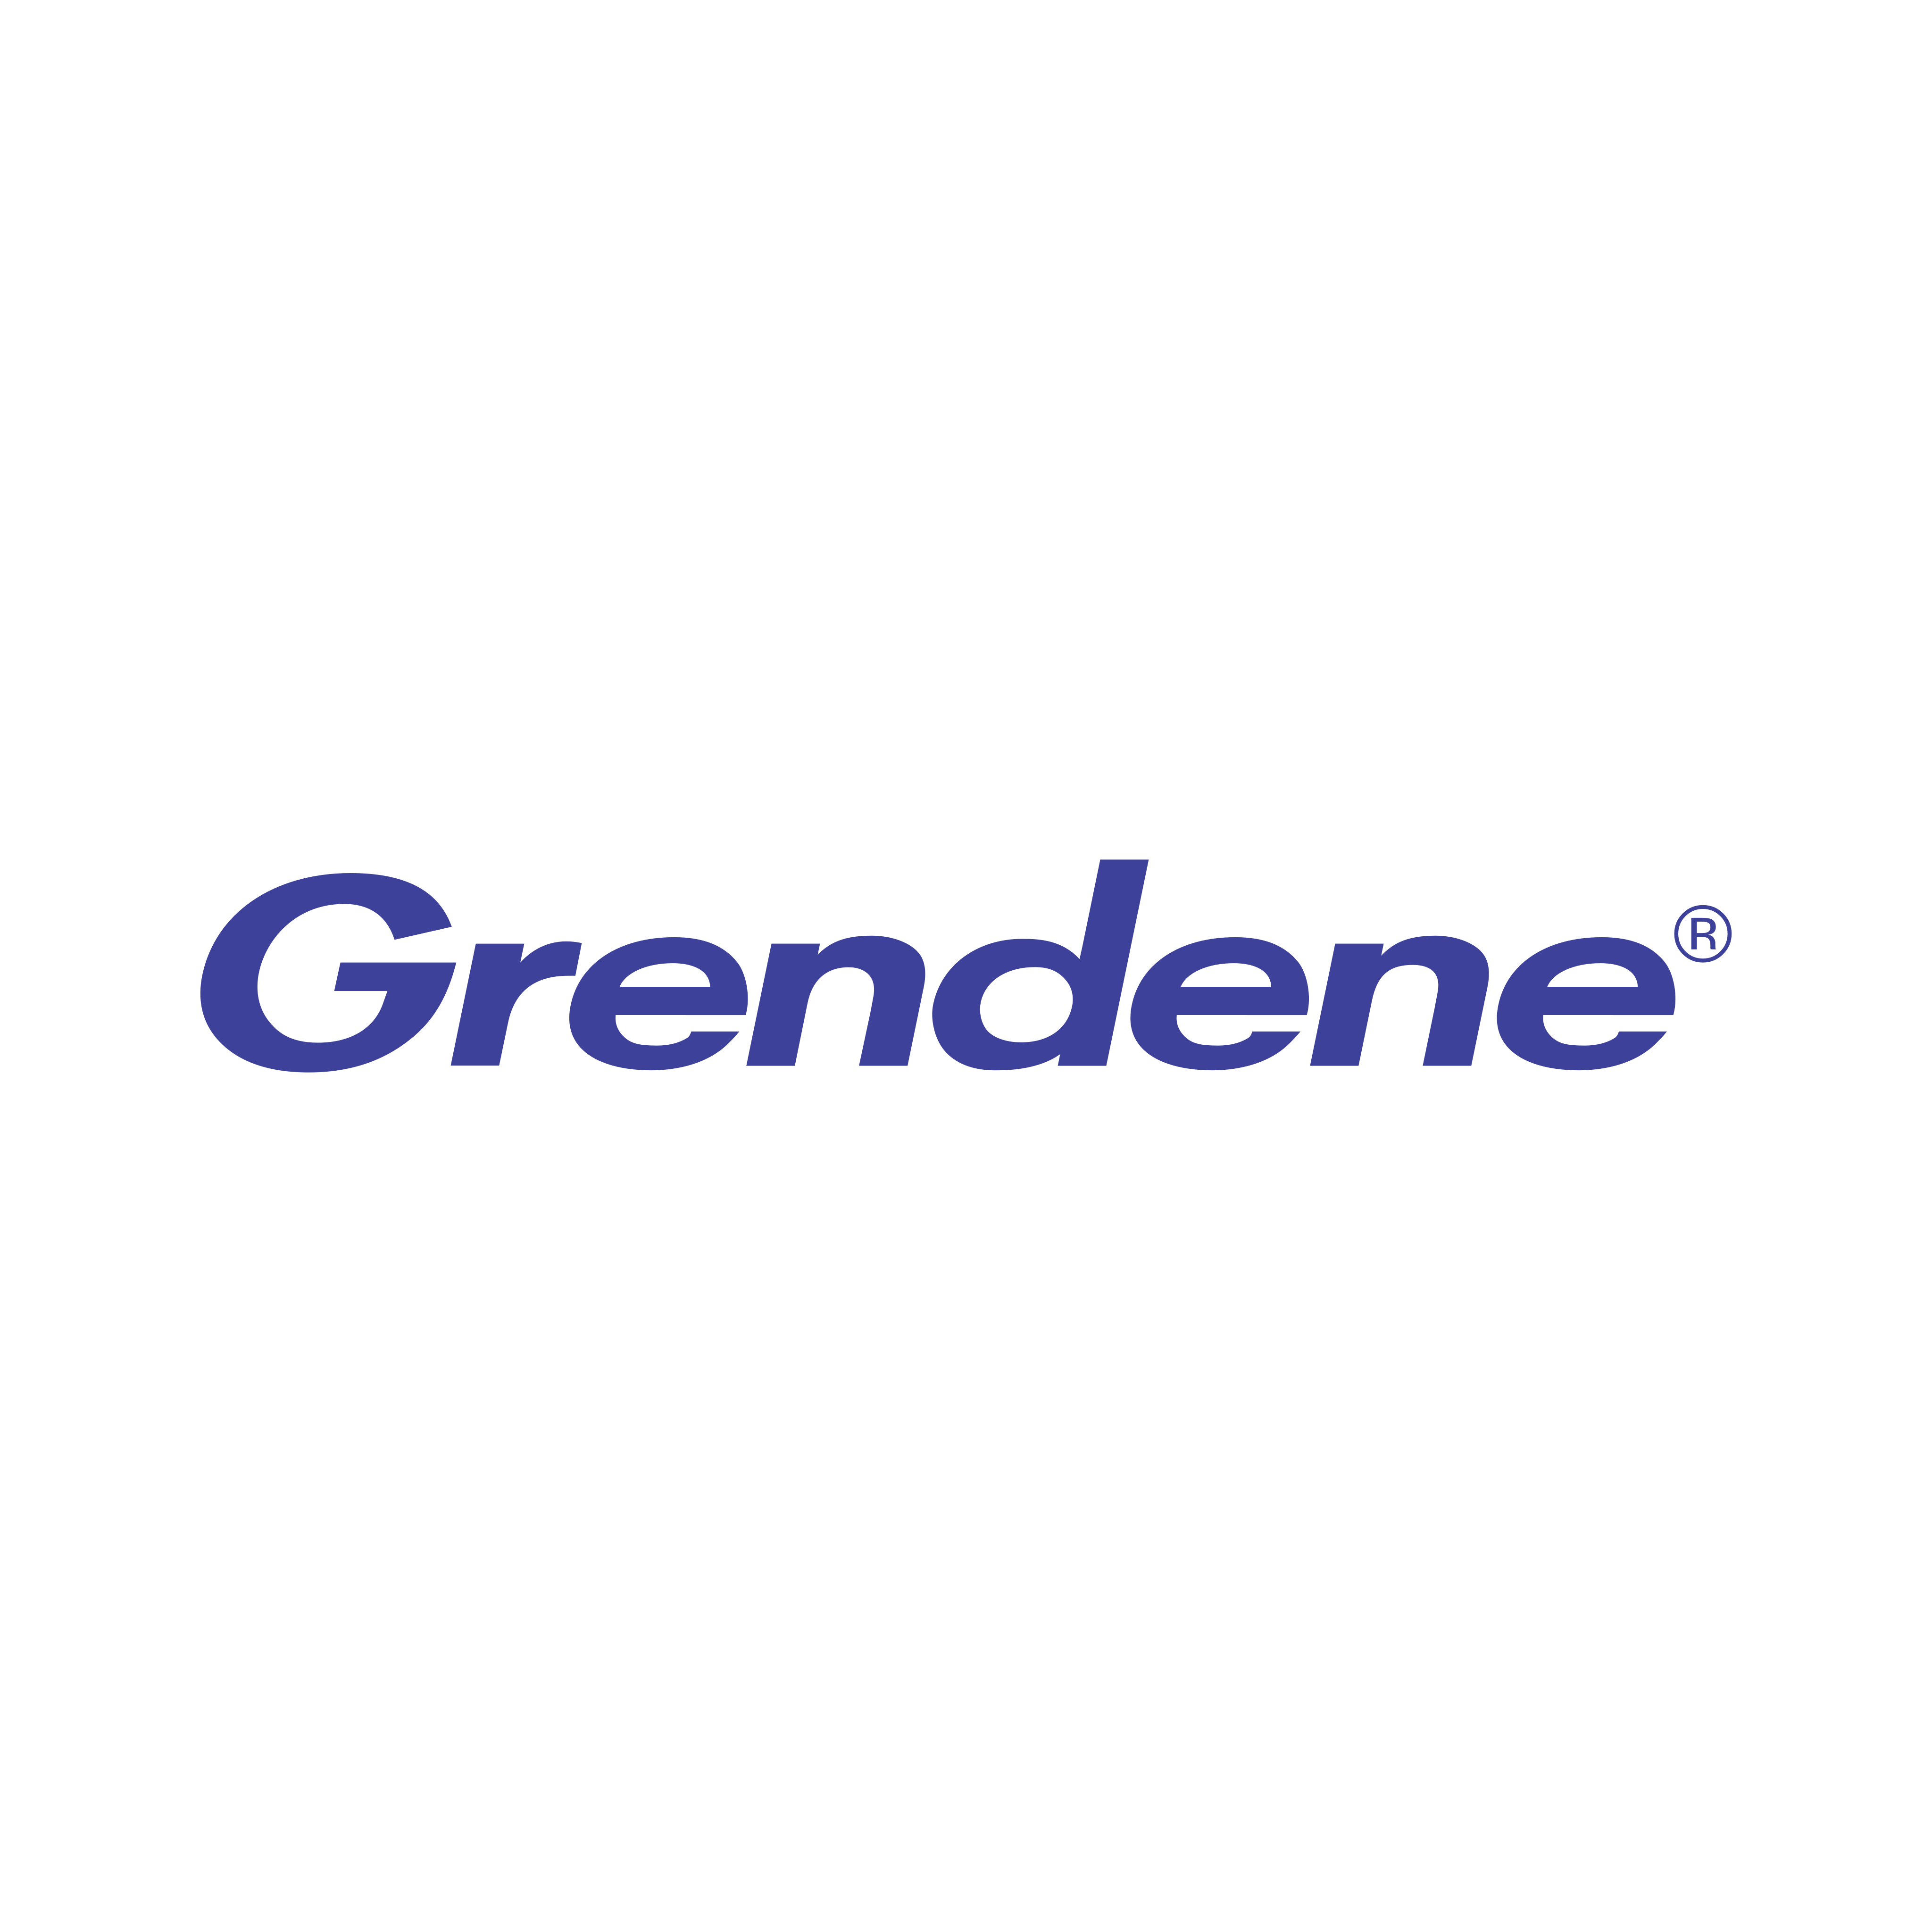 Grendene Logo PNG.